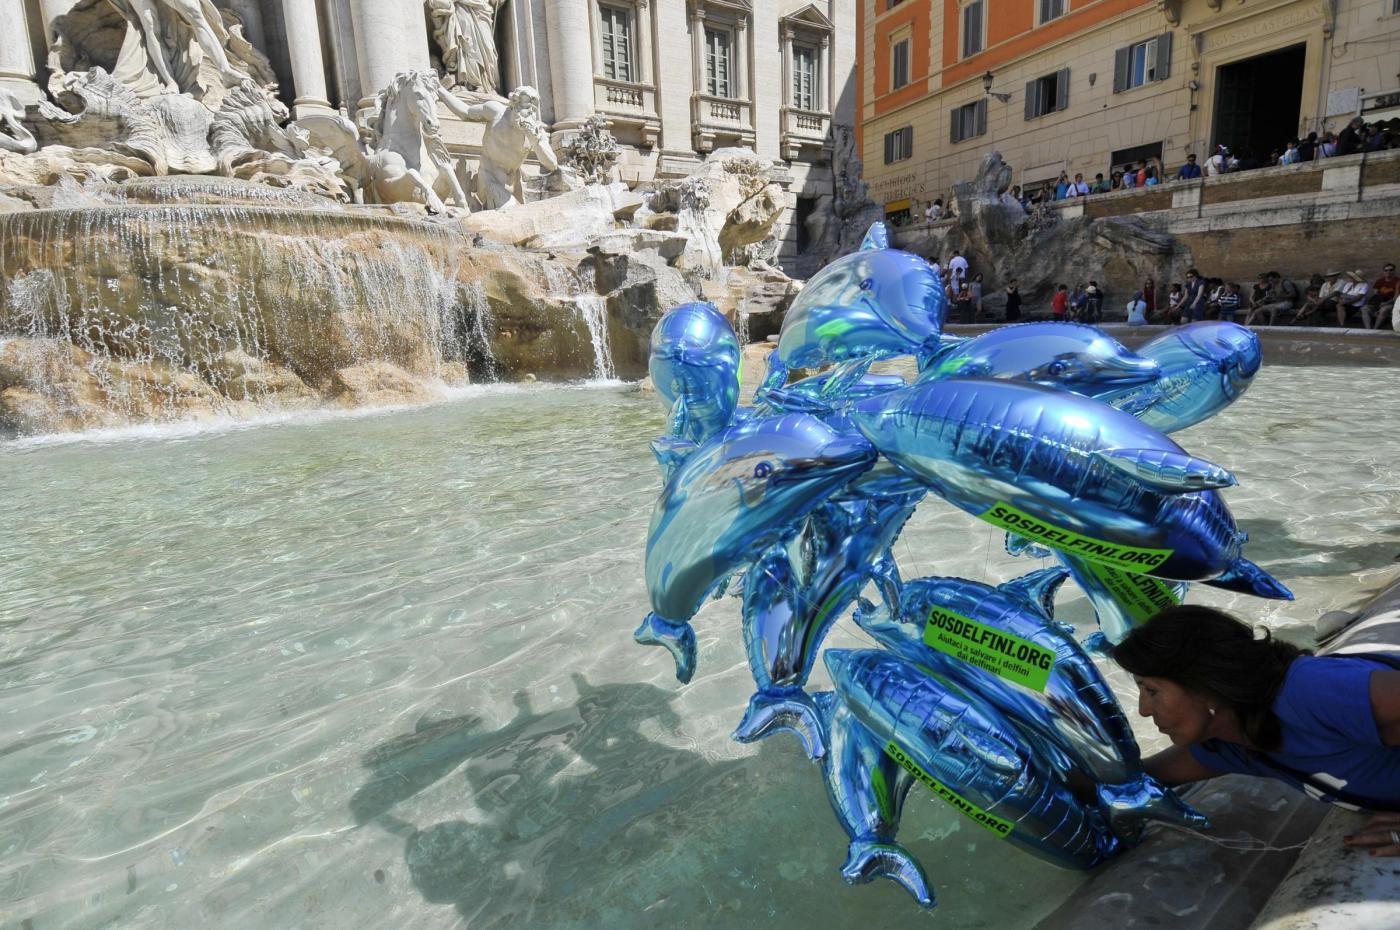 Roma, Fontana di Trevi flash mob a favore dei delfini 08